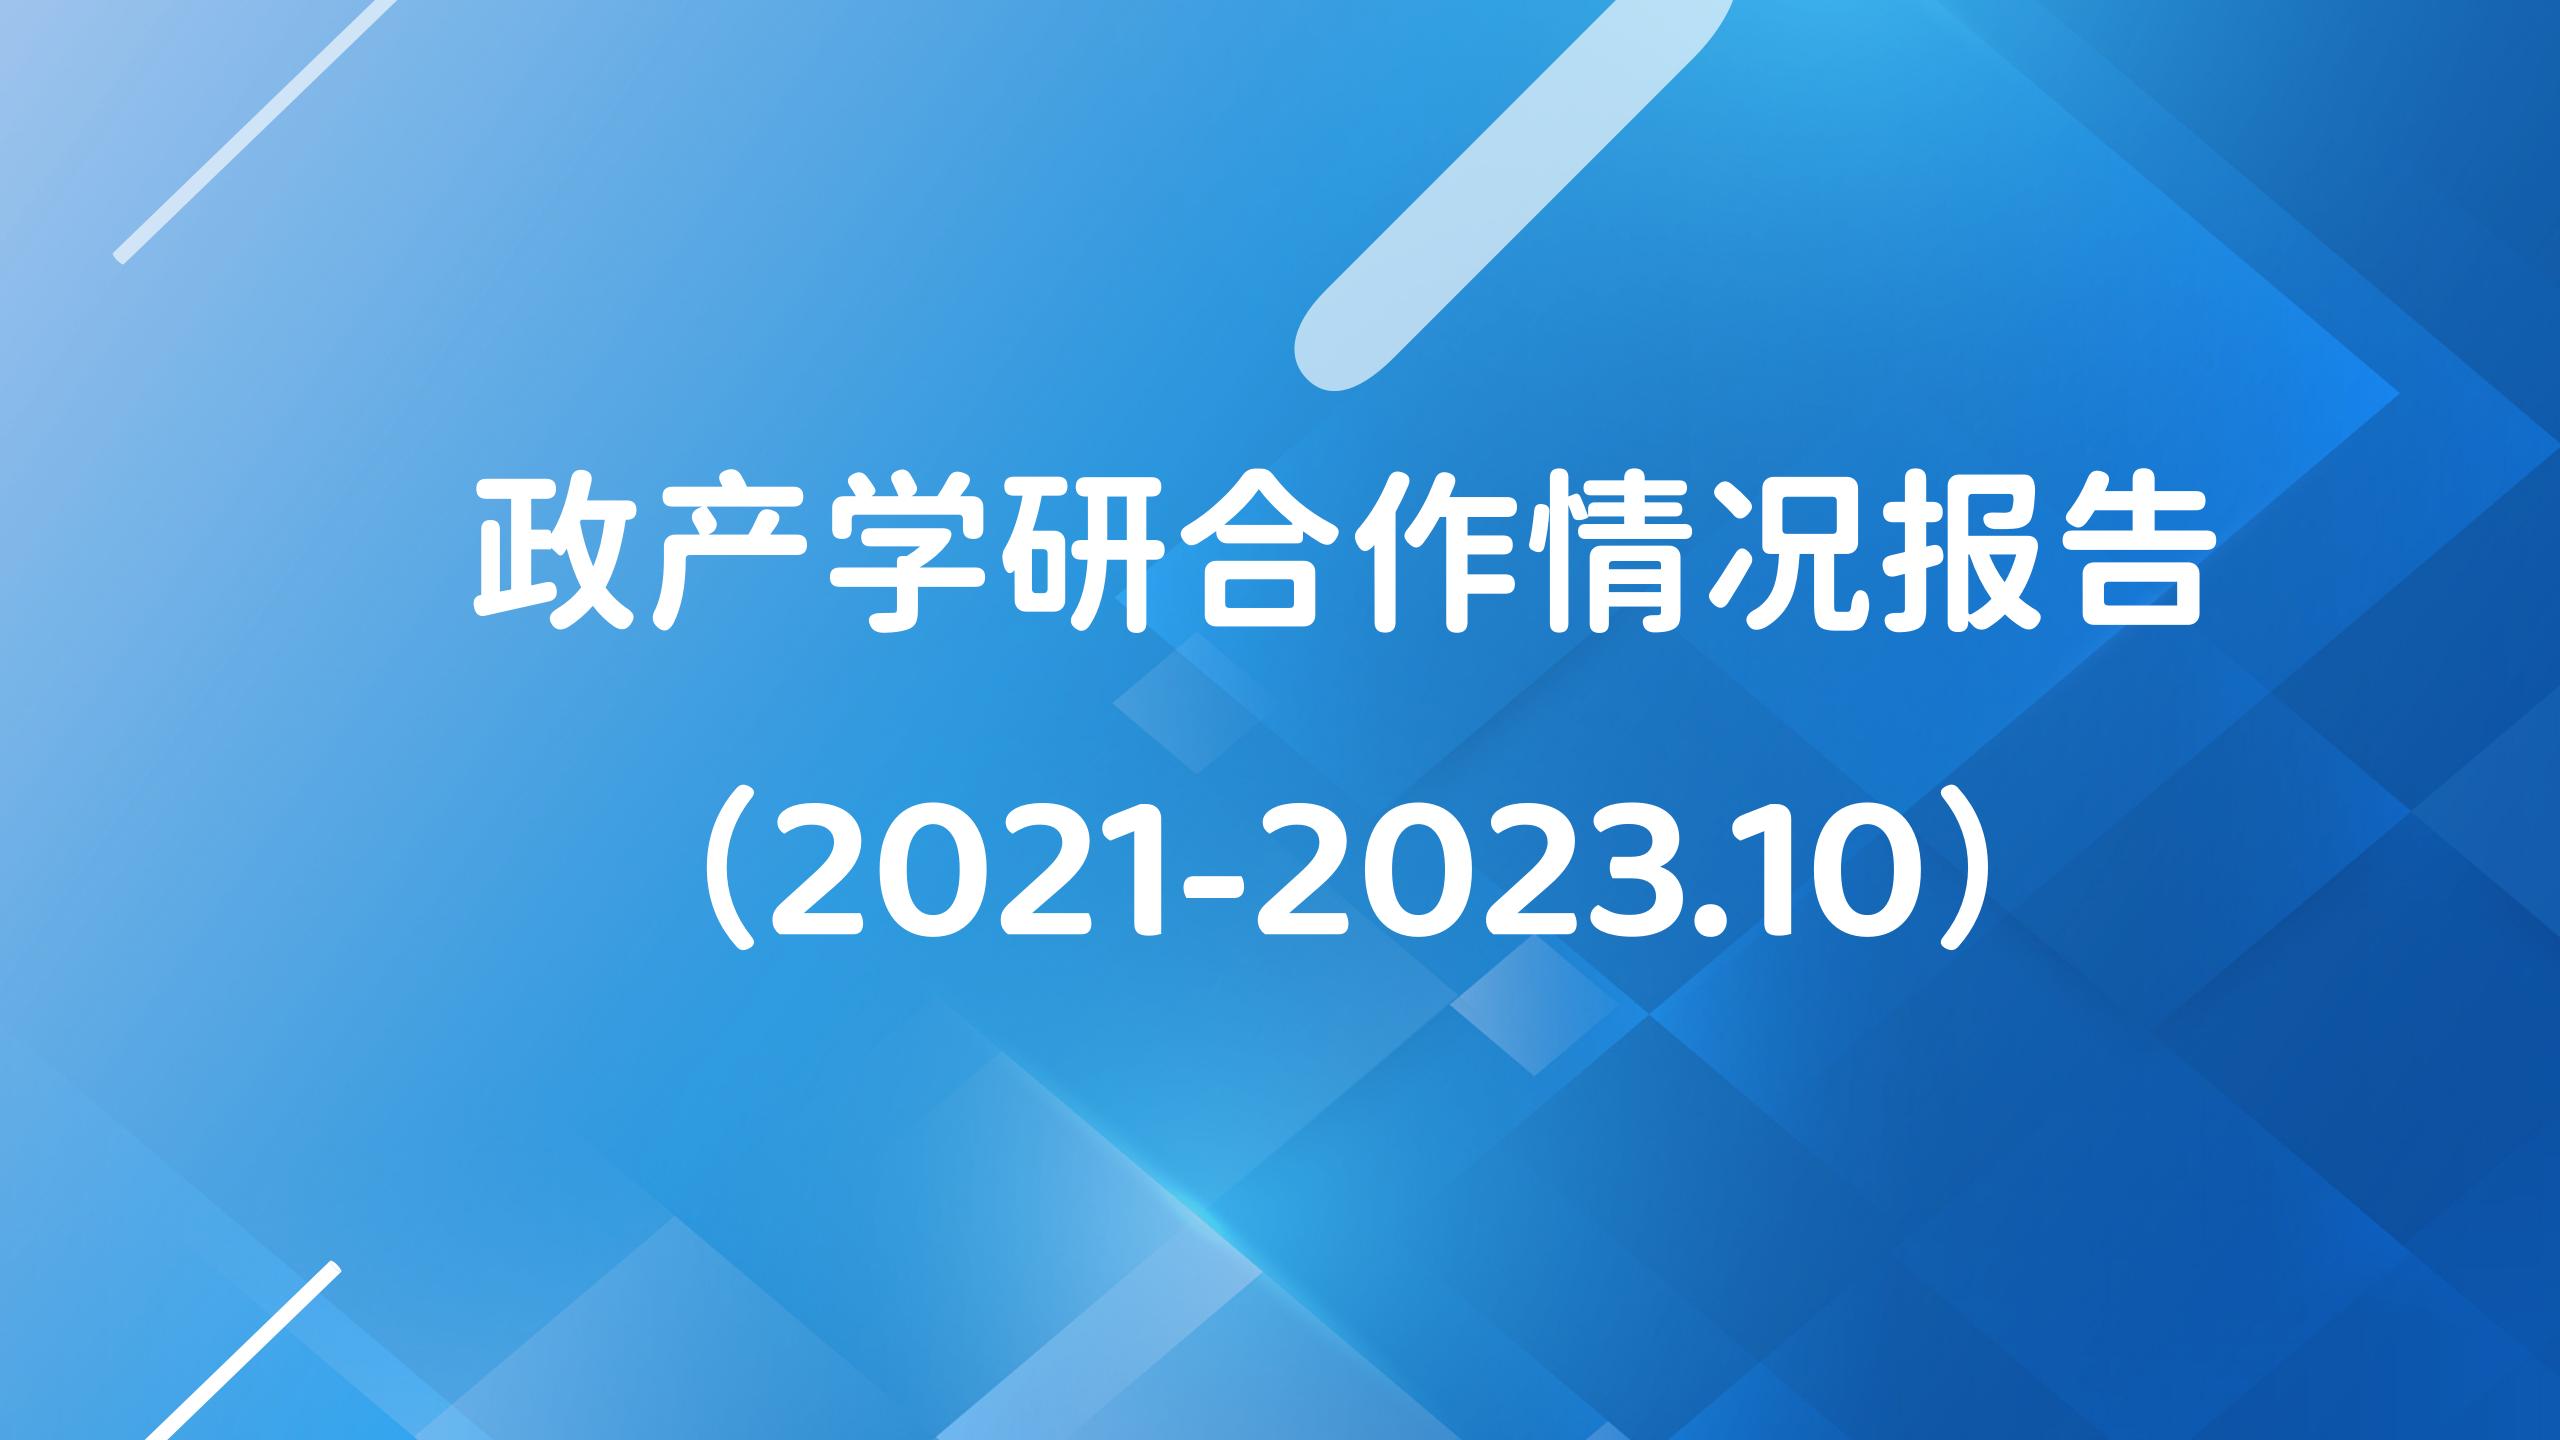 研究 |政产学研合作情况报告（2021-2023.10）